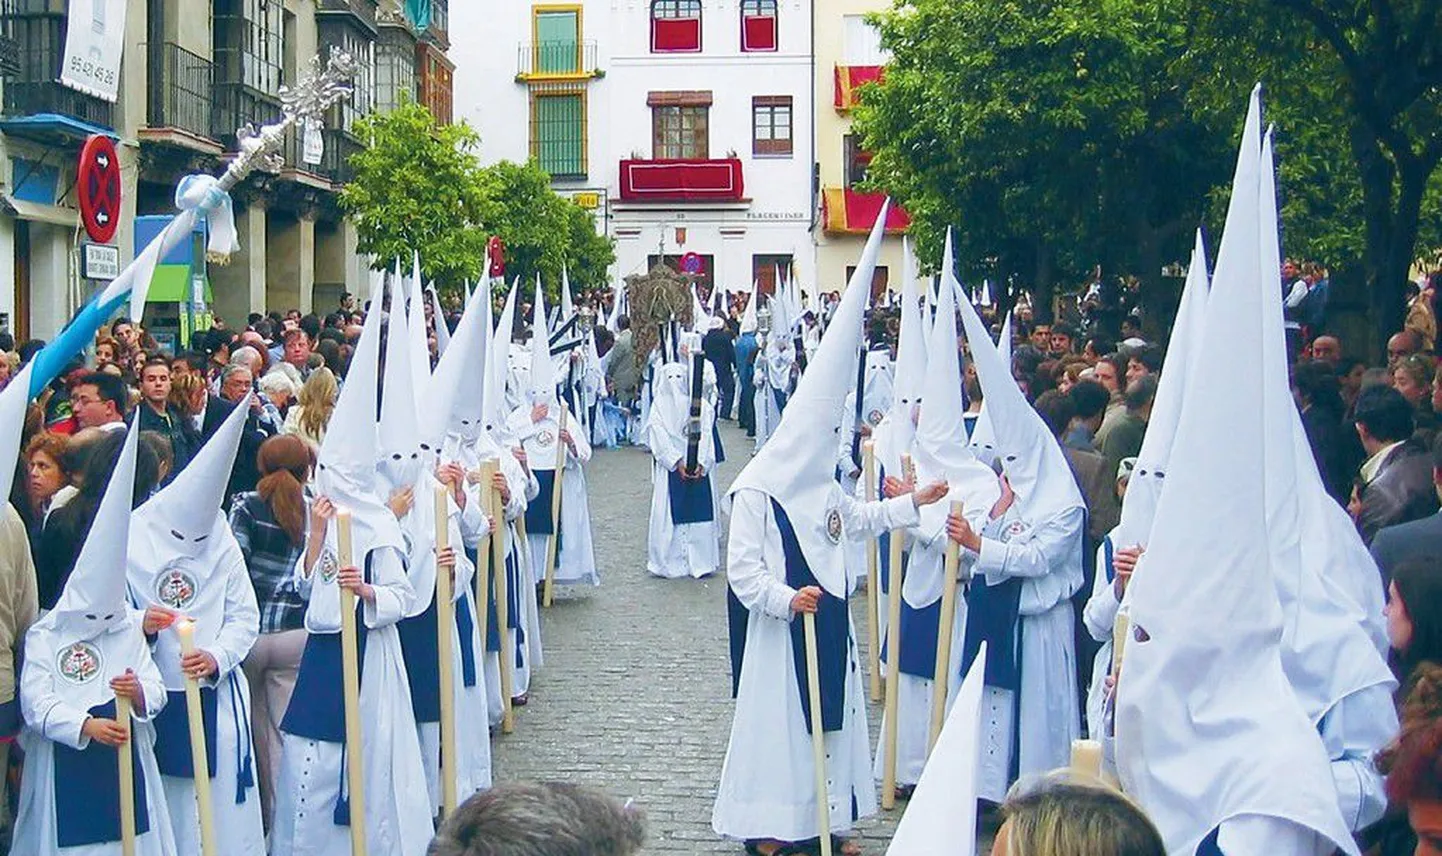 Maani mantlid ja kõrged koonusjad peakatted-maskid, mille silmaavadest vaatavad vastu tumedad pilgud. Tõrvikute ere valgus ja suits. Aeglaselt õõtsudes liigub ähvardav rongkäik läbi linna. Ei, see pole siiski Ku Klux Klani liikmete kogunemine, vaid lihavõtted Sevillas.